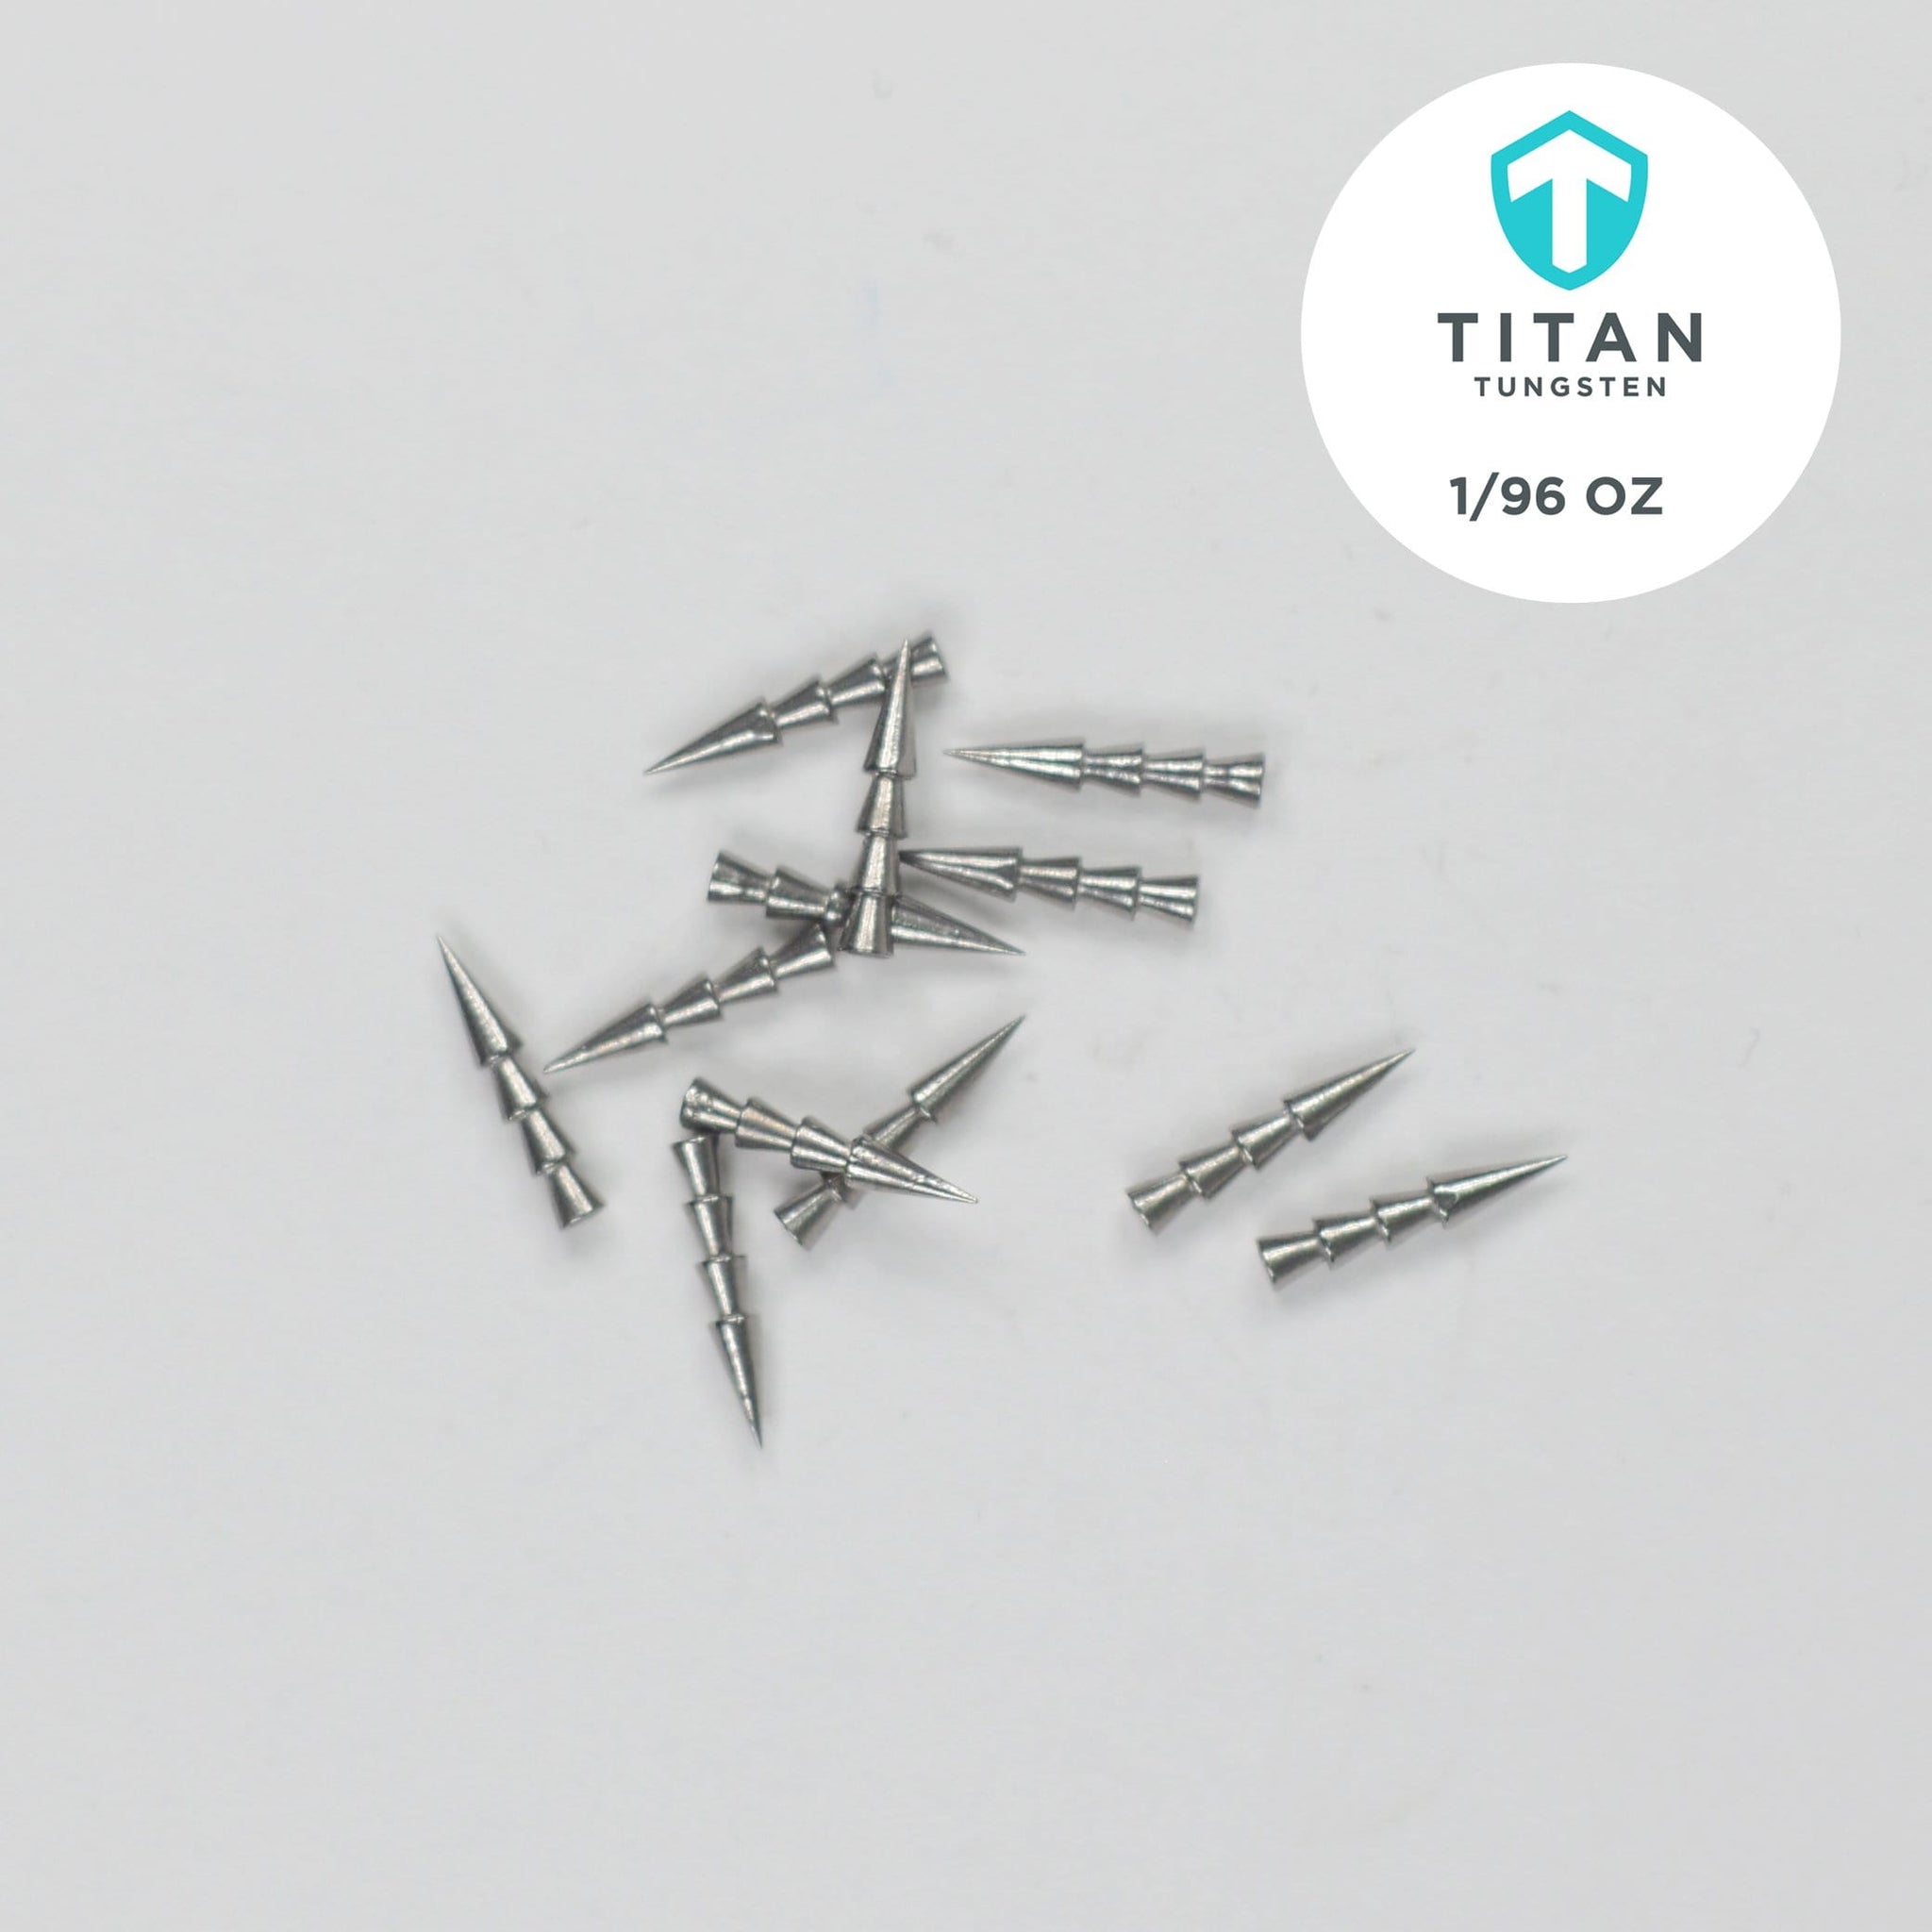 Tungsten Nail Weights – Titan Tungsten